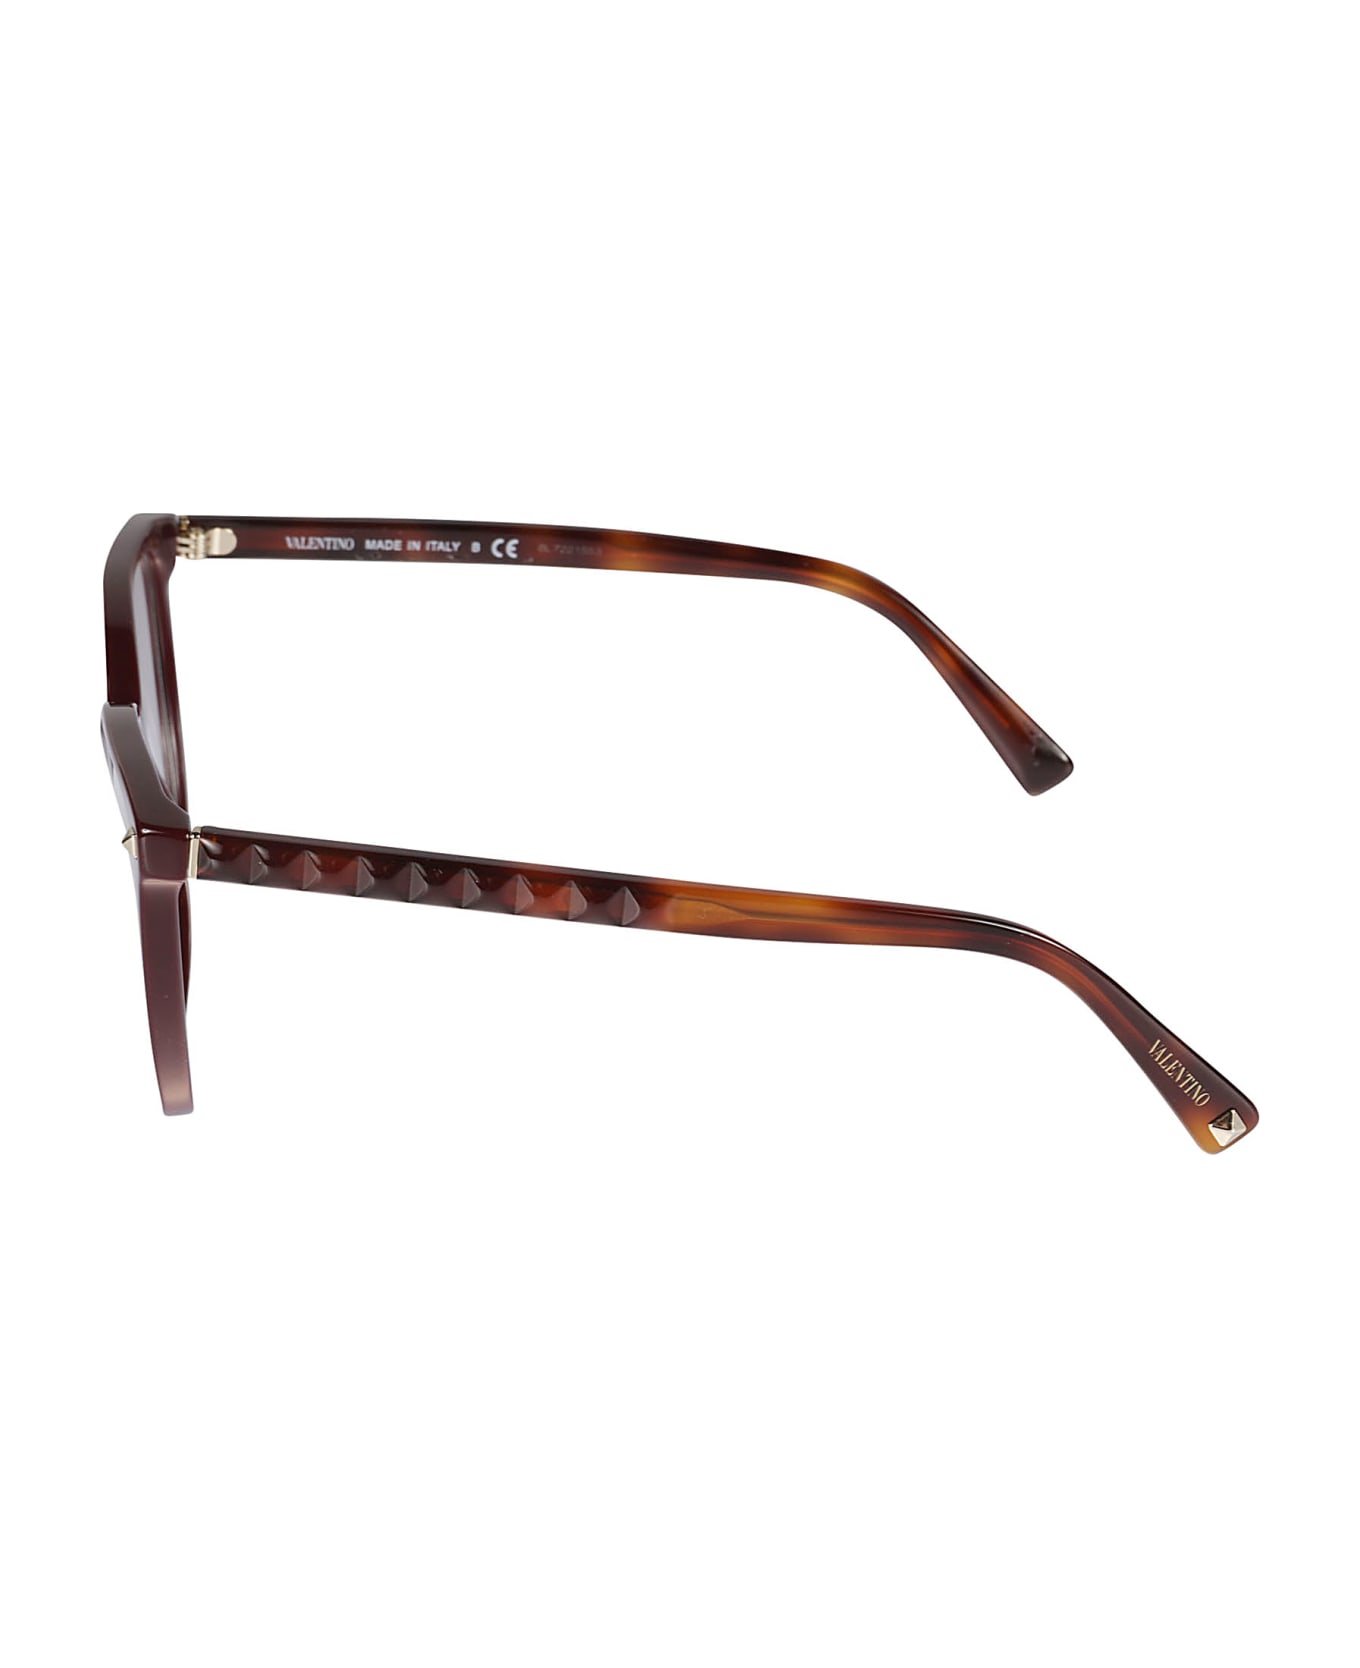 Valentino Eyewear Vista5120 Glasses - 5120 アイウェア